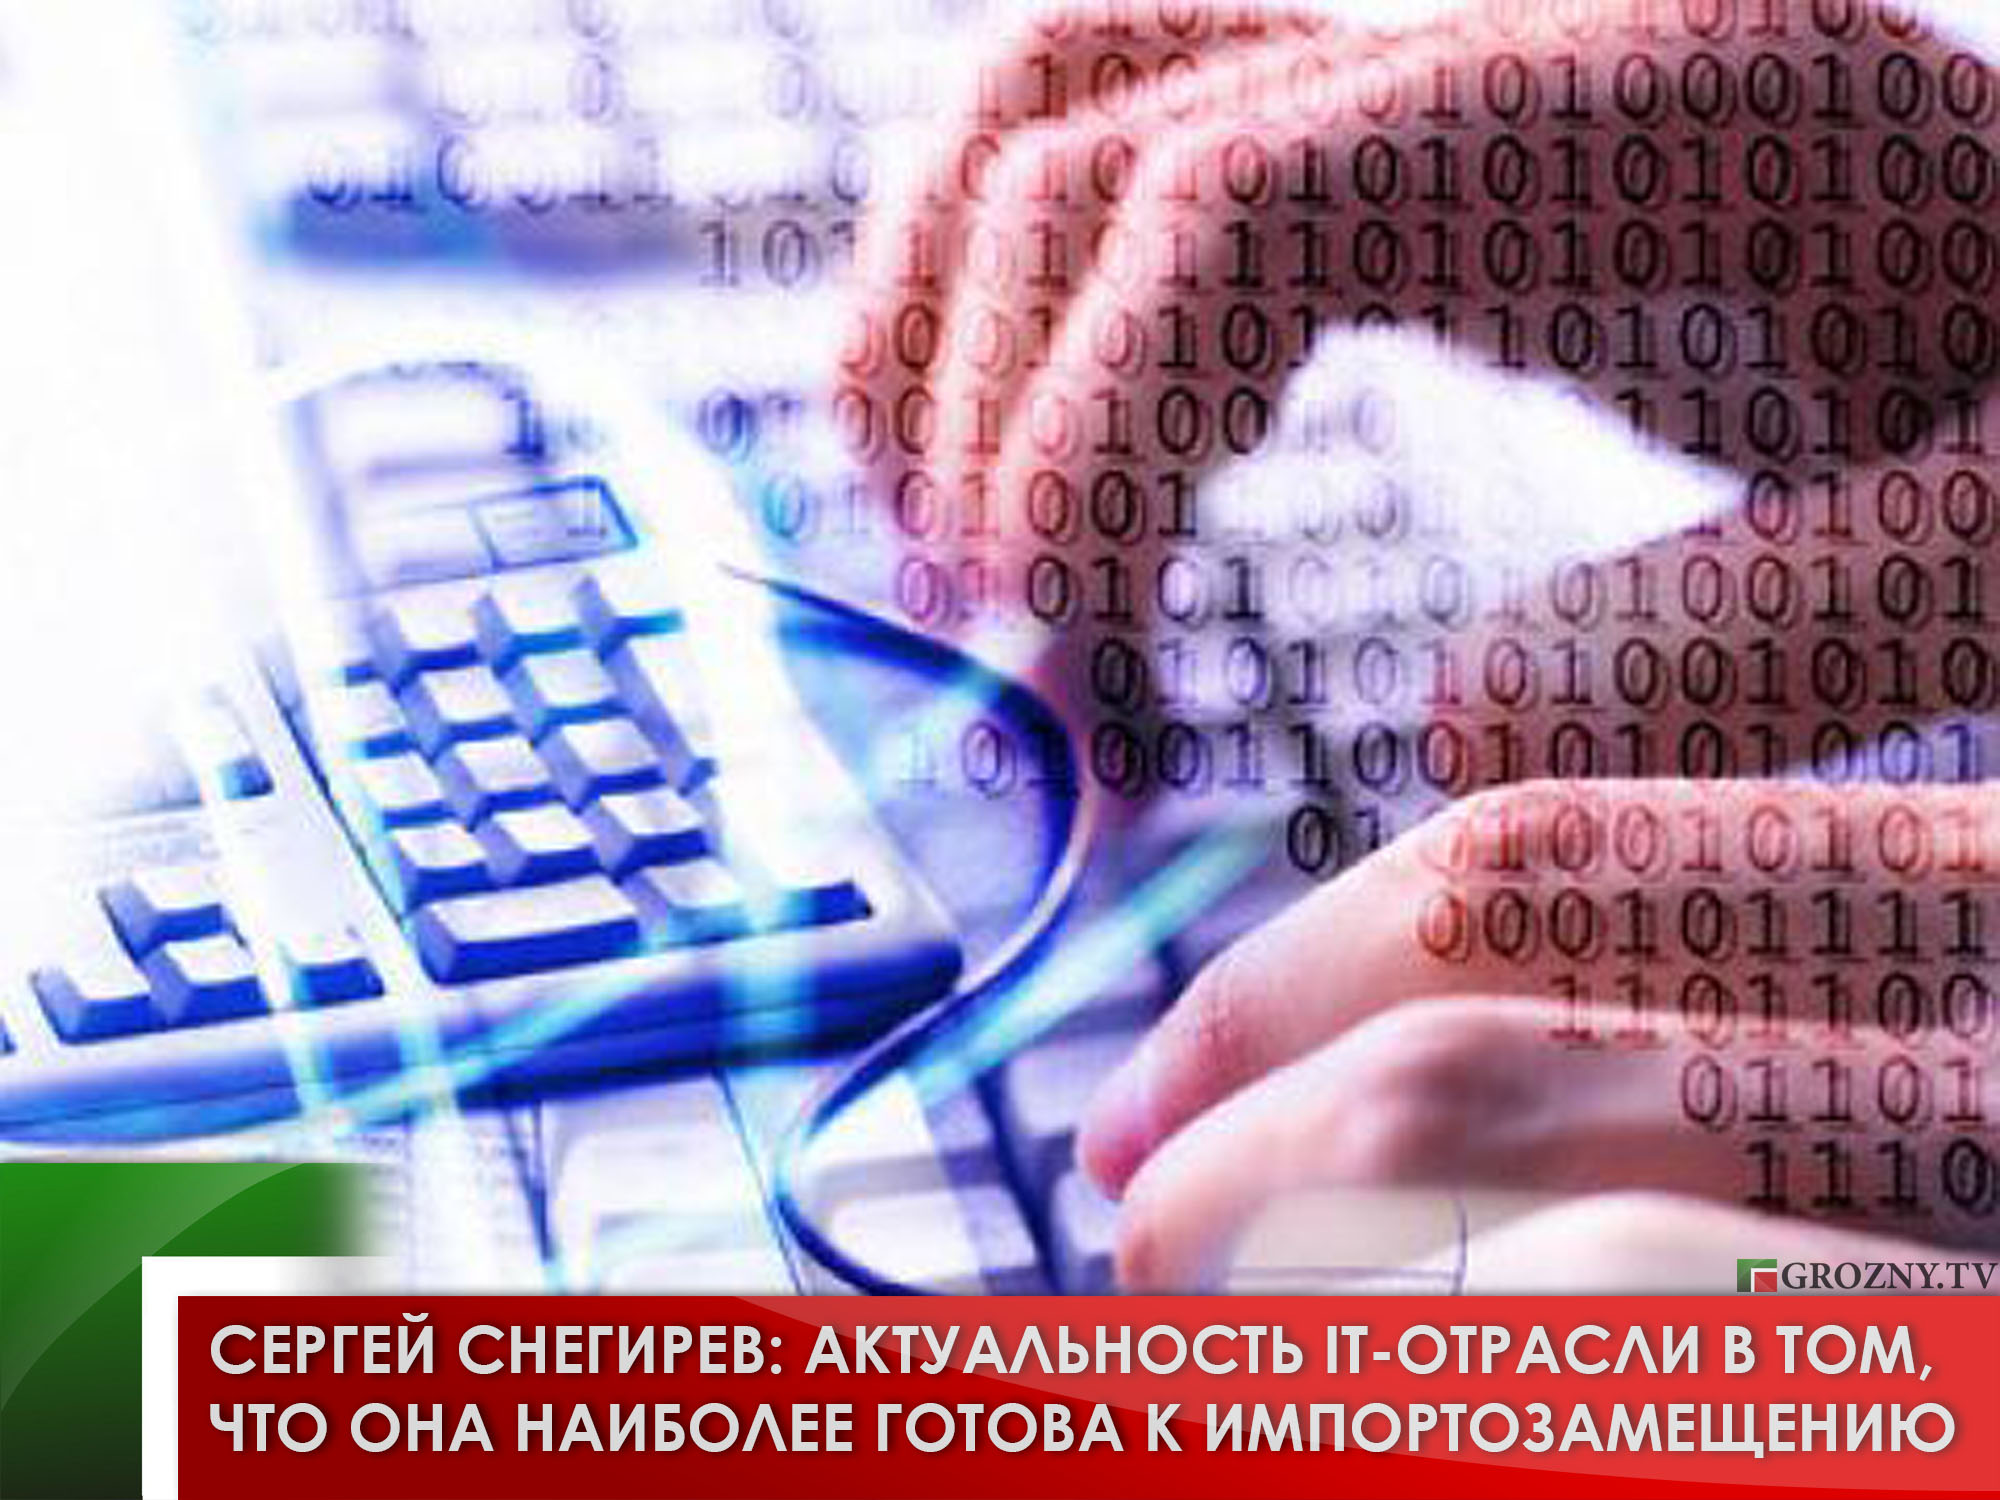 Сергей Снегирев: Актуальность IT-отрасли в том, что она наиболее готова к импортозамещению